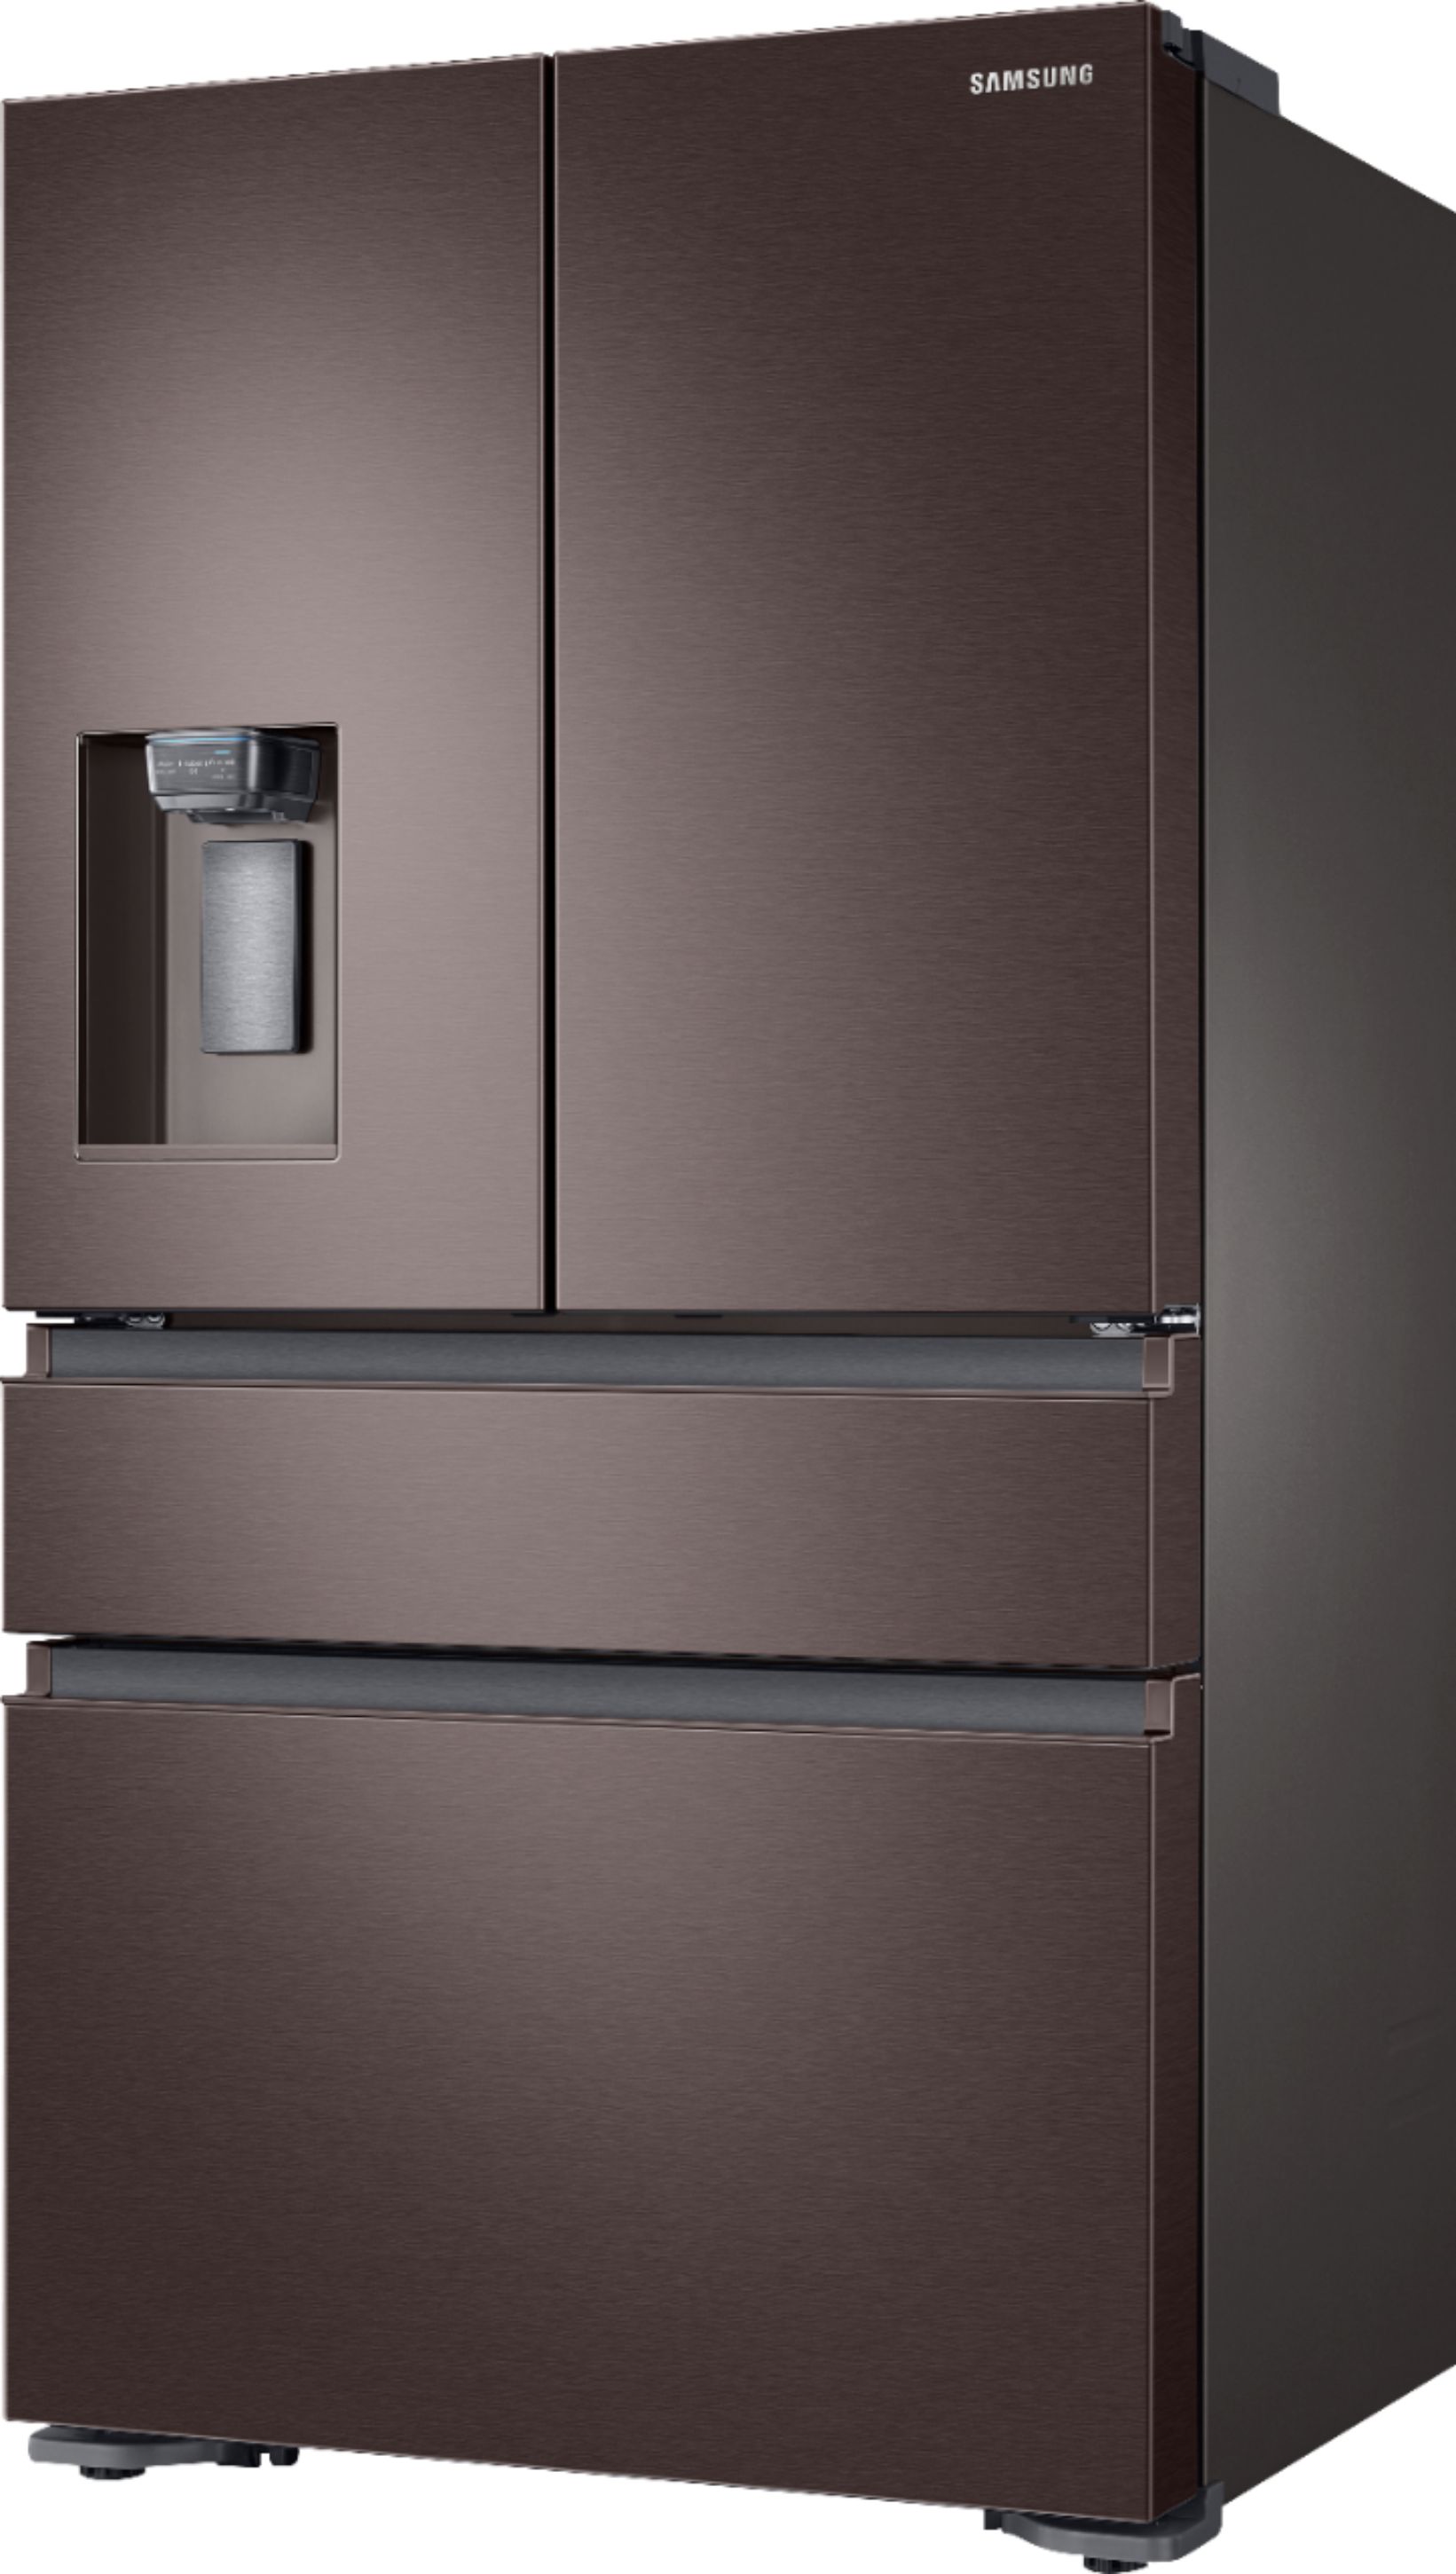 Left View: Samsung - 22.6 Cu. Ft. 4-Door Flex French Door Counter-Depth Refrigerator - Tuscan Stainless Steel